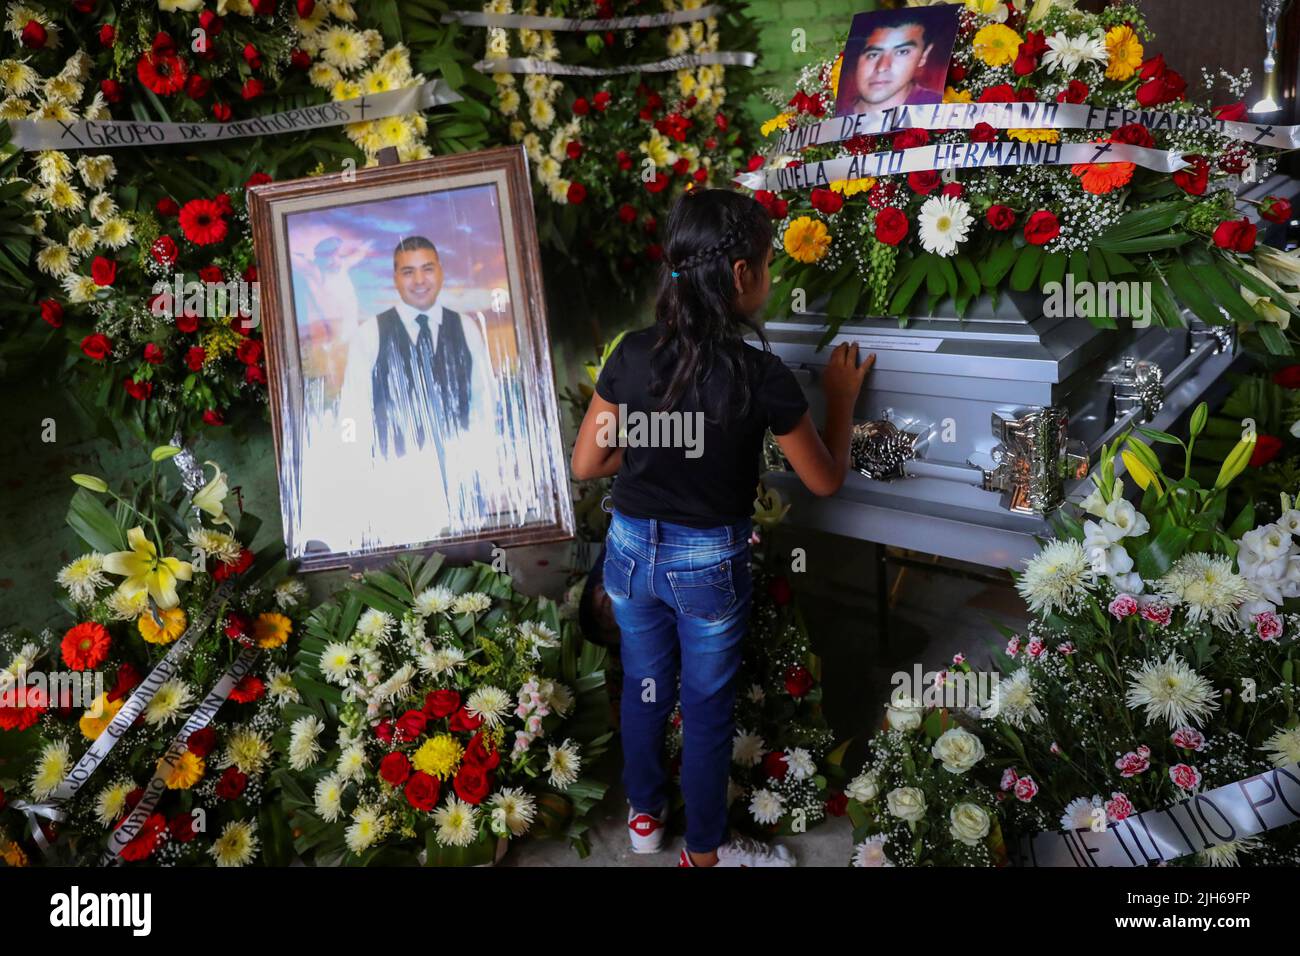 Una niña toca el ataúd del difunto migrante José López, de 34 años, quien murió en un camión de remolque en Texas, durante su funeral después de que sus restos fueran repatriados a México, en Celaya, estado de Guanajuato, México, el 15 de julio, 2022. REUTERS/Edgard Garrido Foto de stock